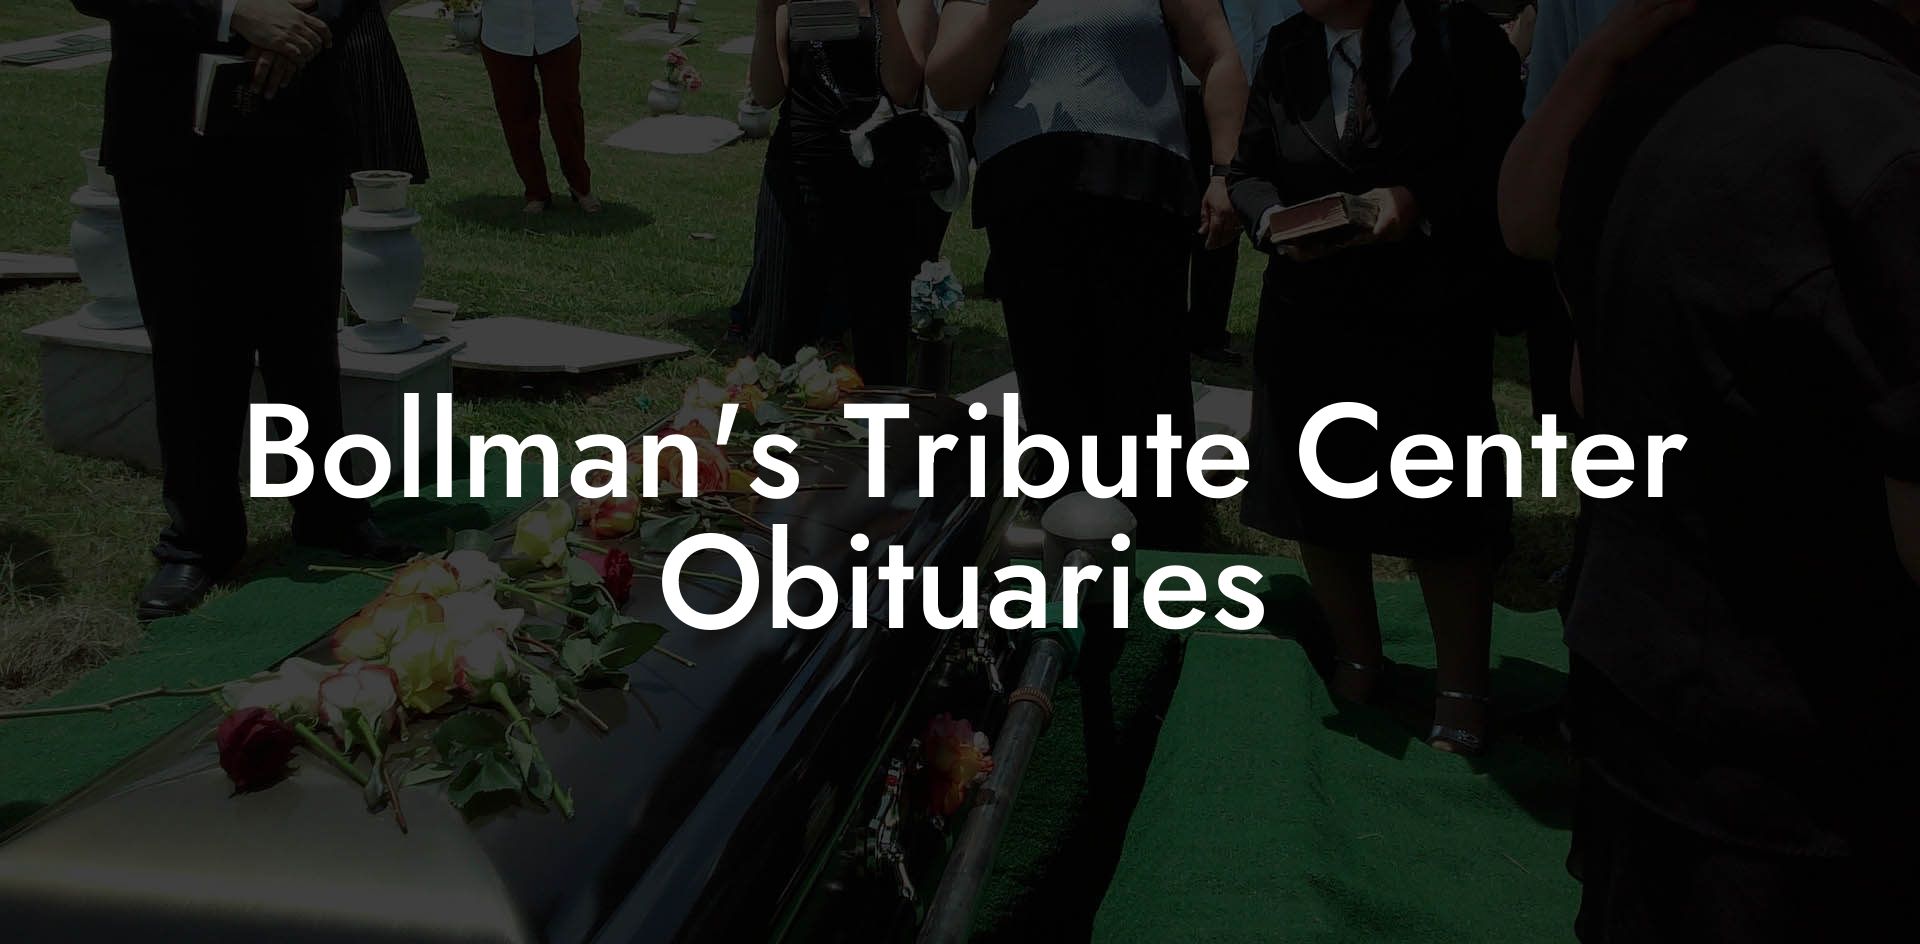 Bollman's Tribute Center Obituaries